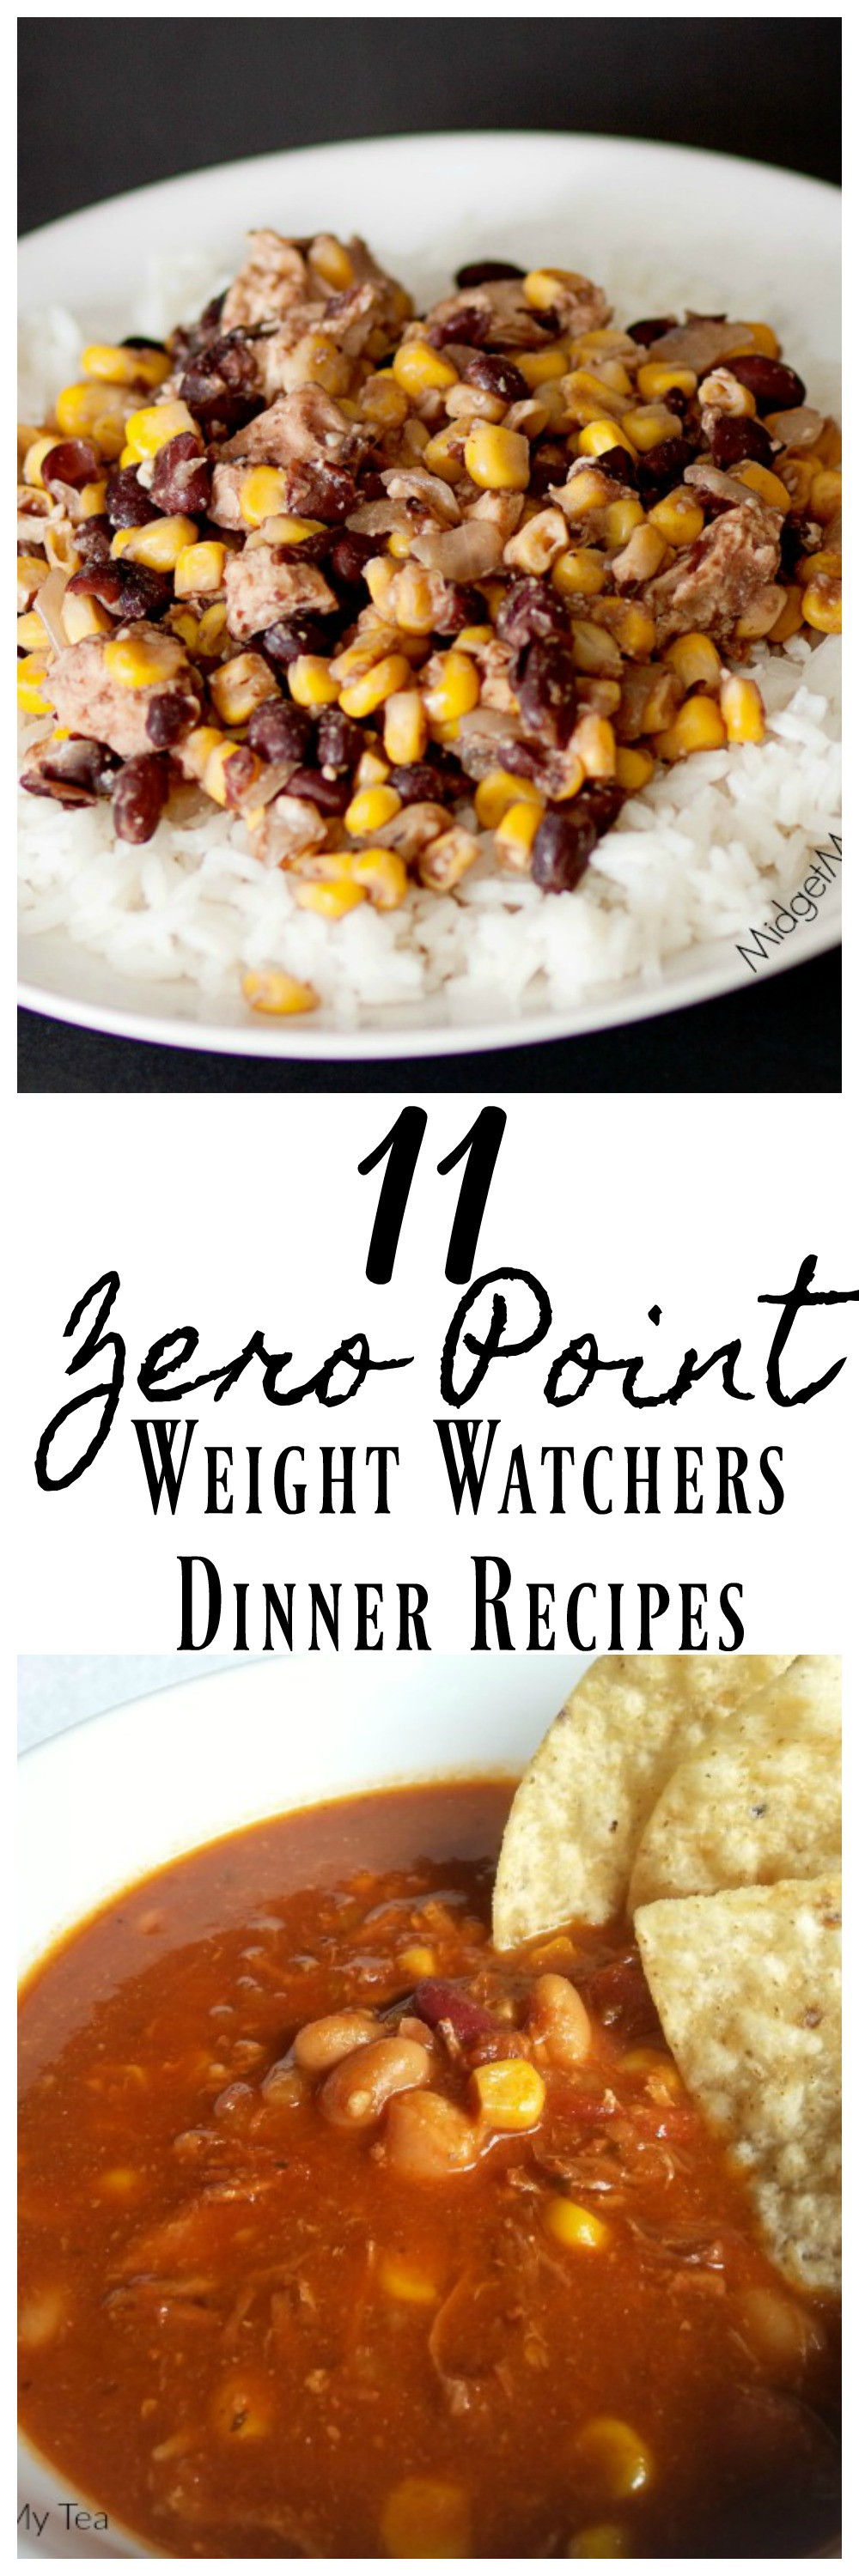 Weight Watchers Dinner Recipes
 11 Zero Point Weight Watchers Dinner Recipes • Mid Momma